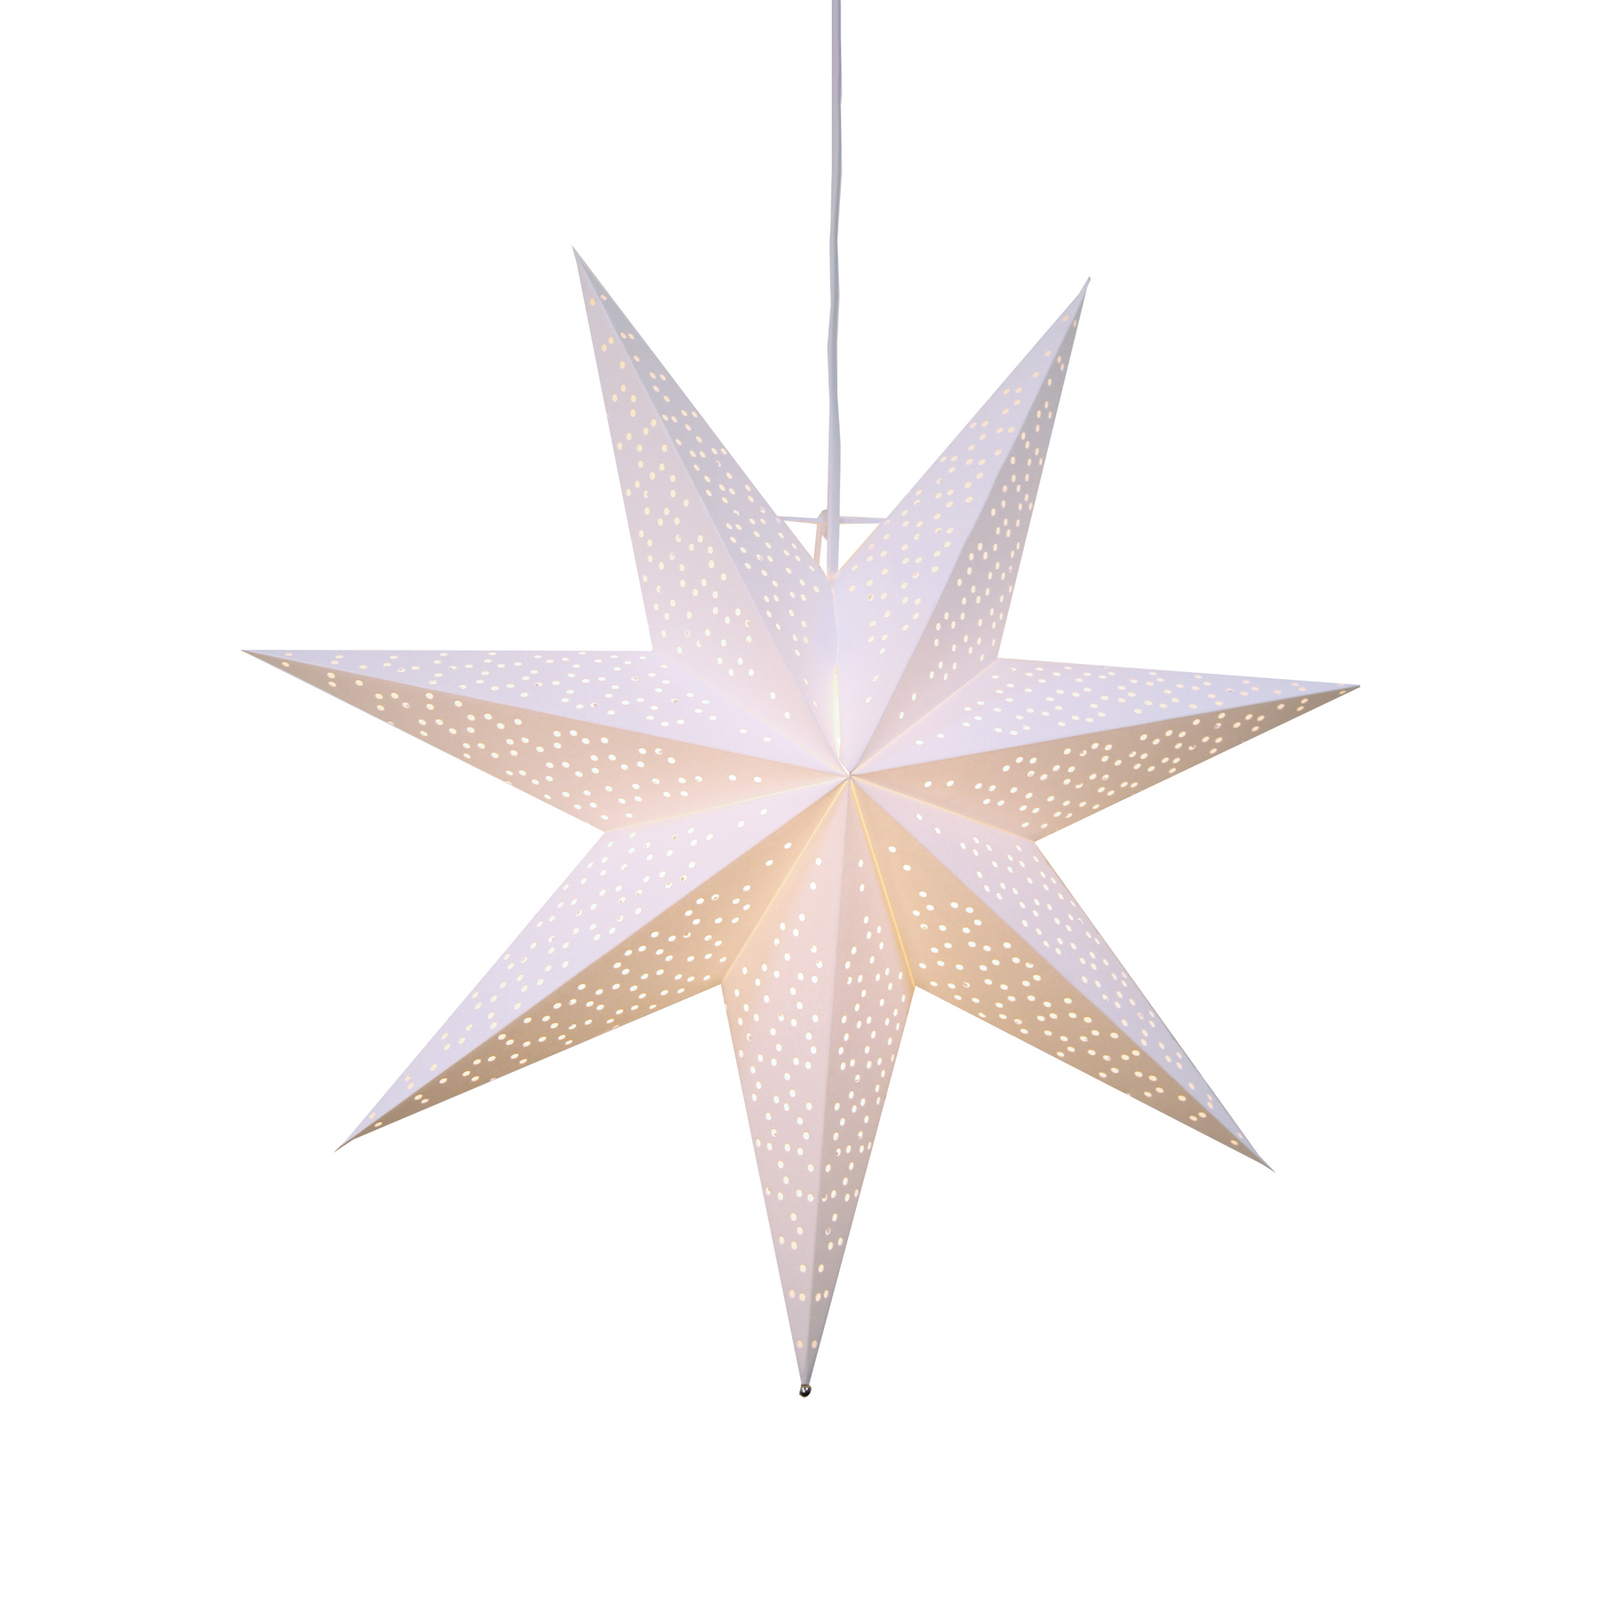 Papírová hvězda Dot s děrovaným vzorem, bílá Ø54cm